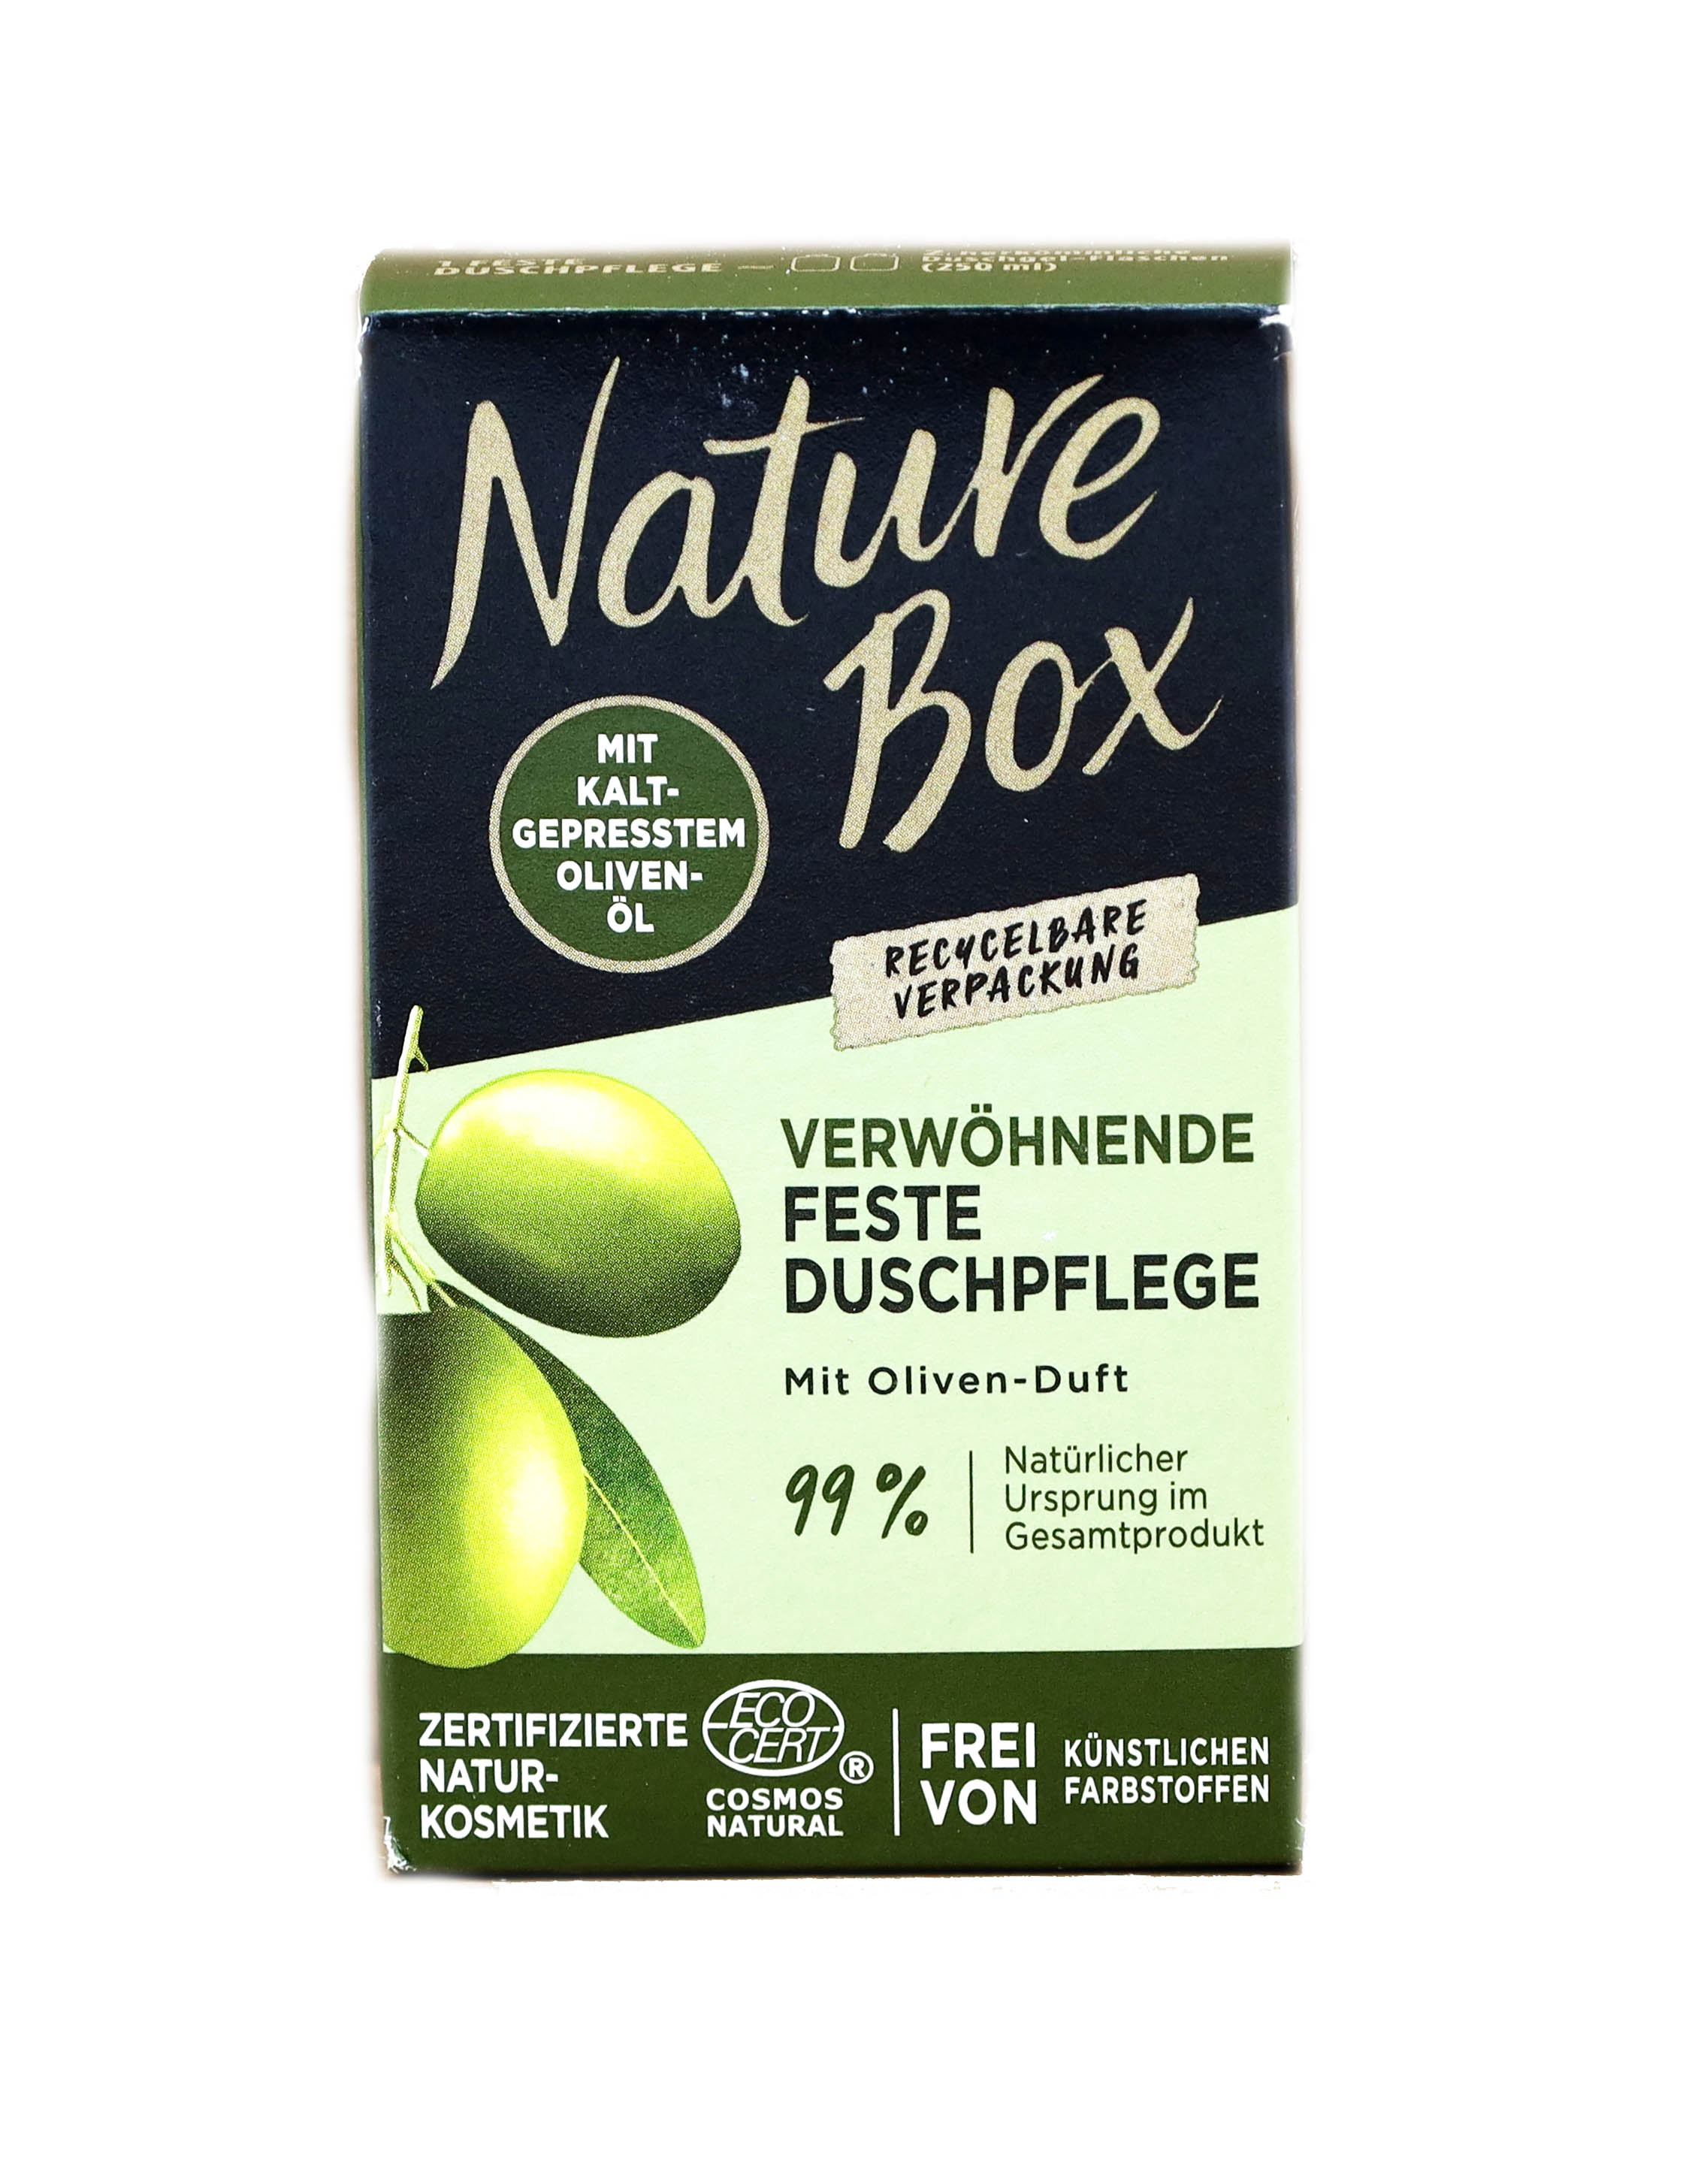 Nature Box Feste Duschpflege mit Oliven Öl 100g